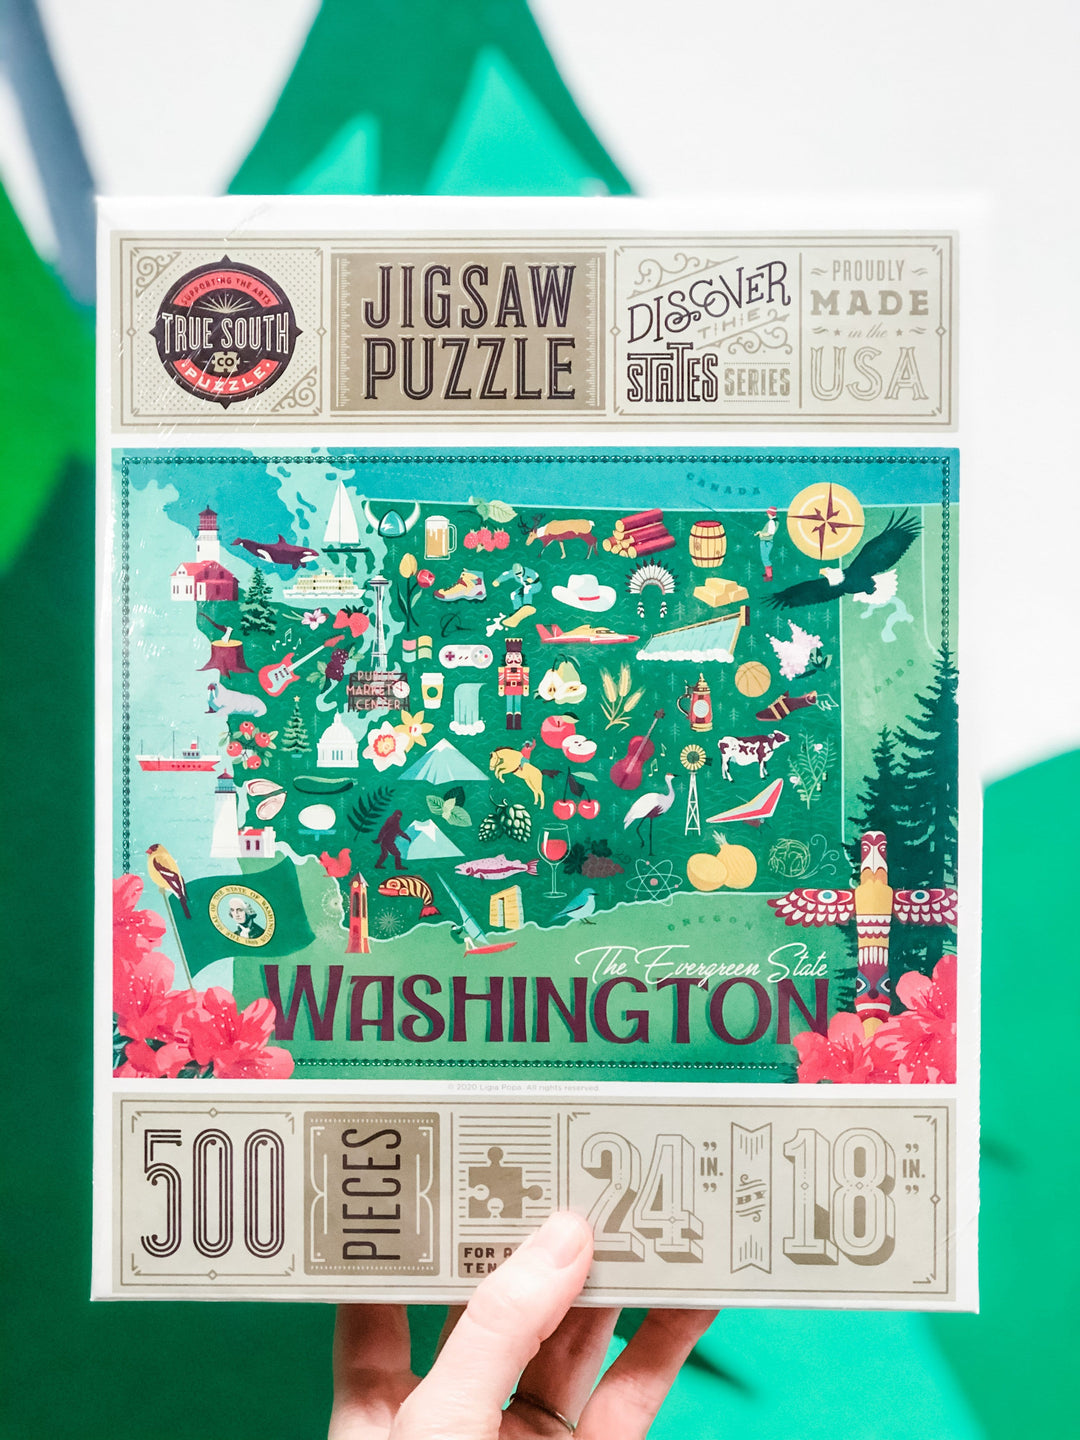 True South Puzzles Puzzle Washington State - 500 Piece Puzzle